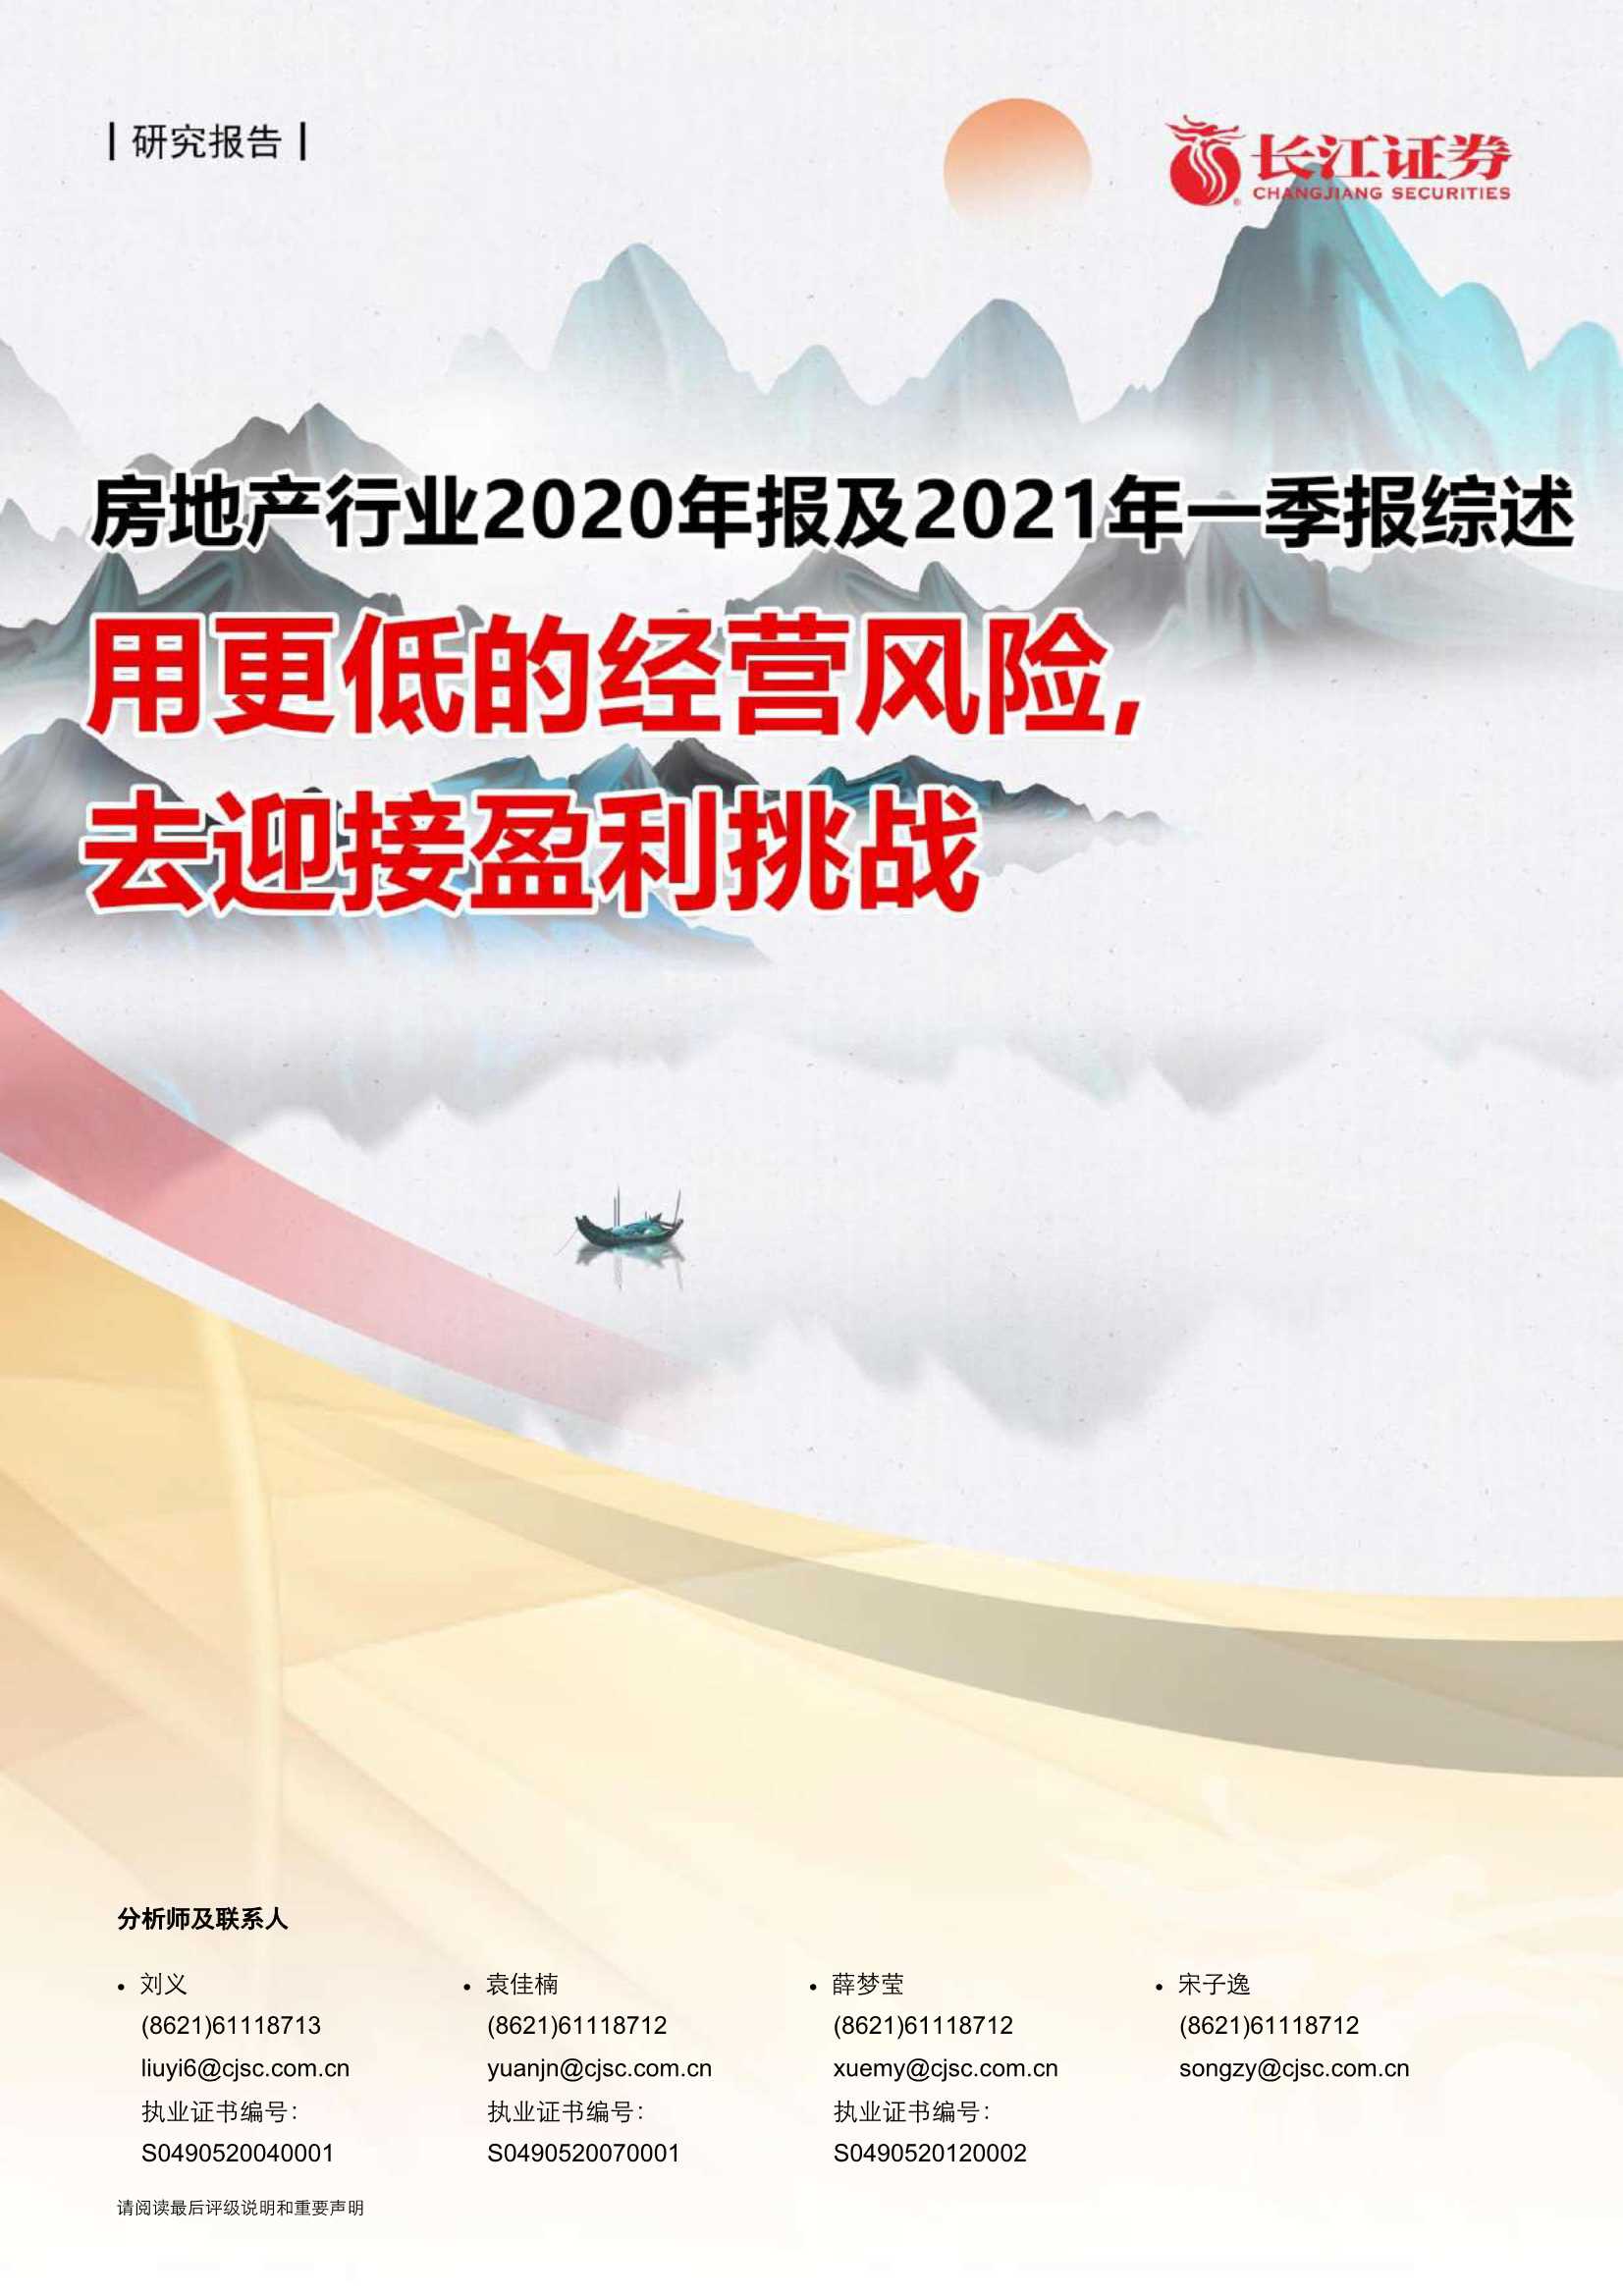 长江证券-房地产行业2020年报及2021年一季报综述：用更低的经营风险，去迎接盈利挑战-20210506-27页